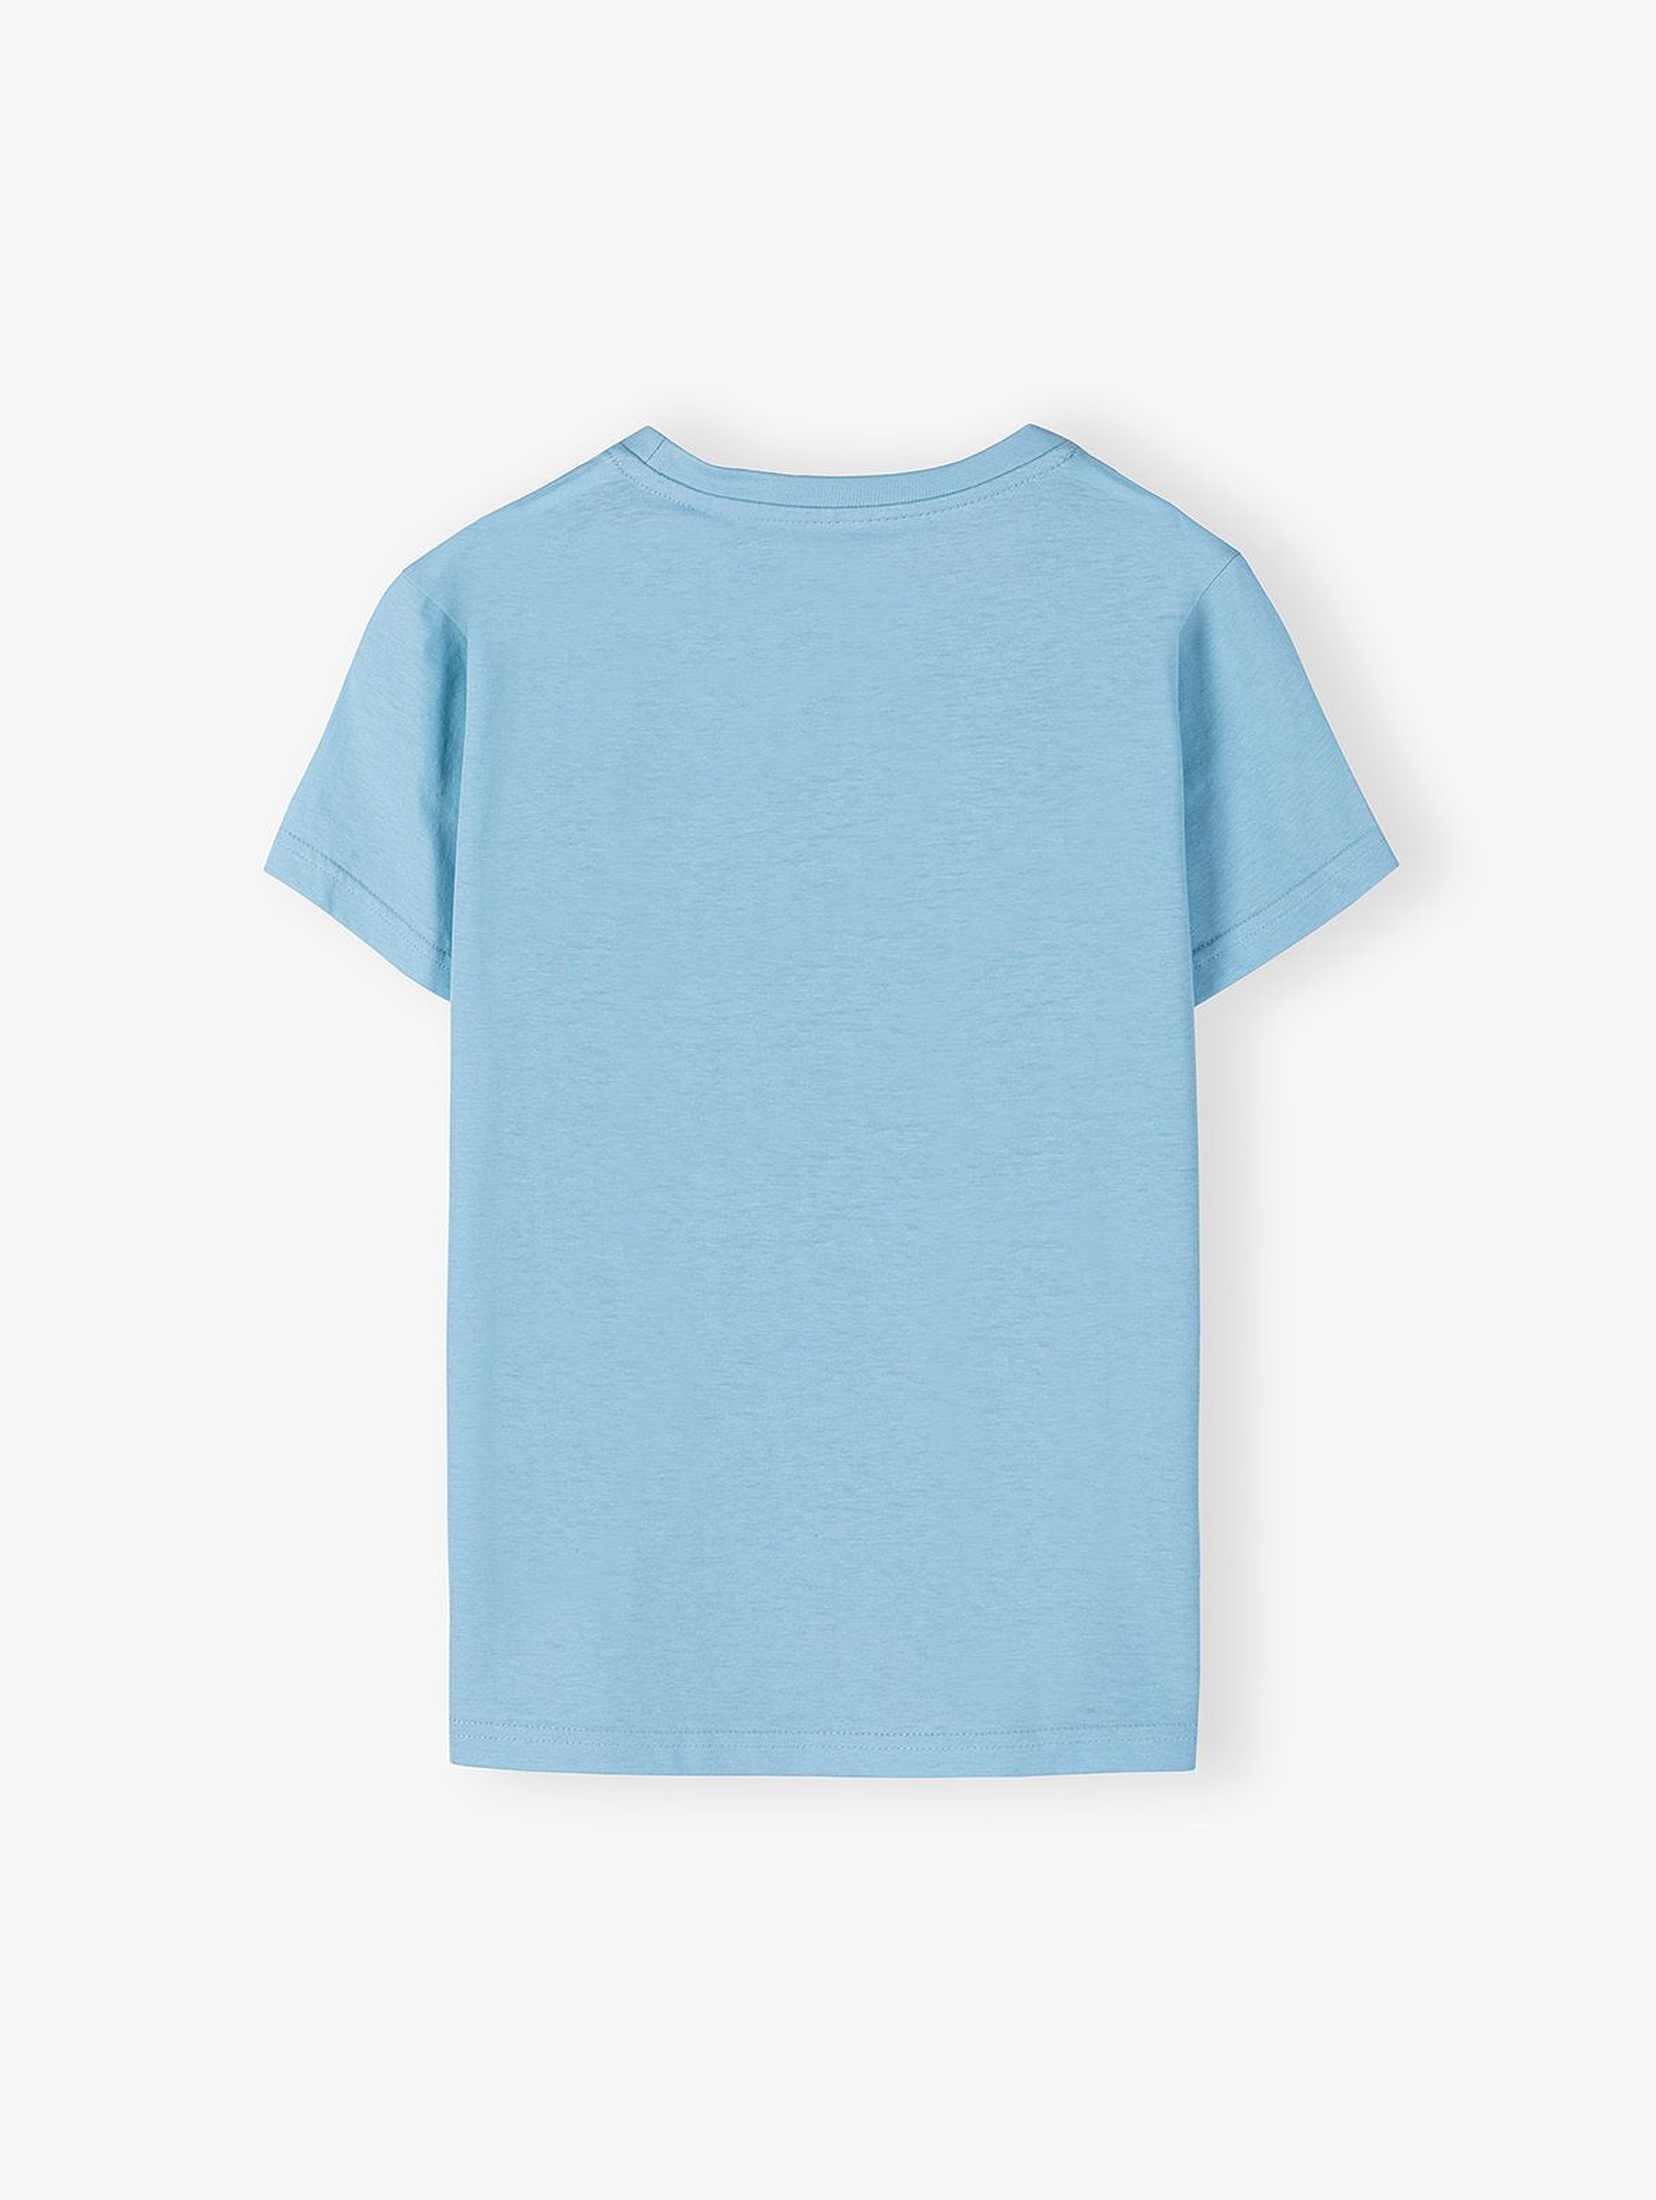 Bawełniany T-shirt dla chłopca - niebieski